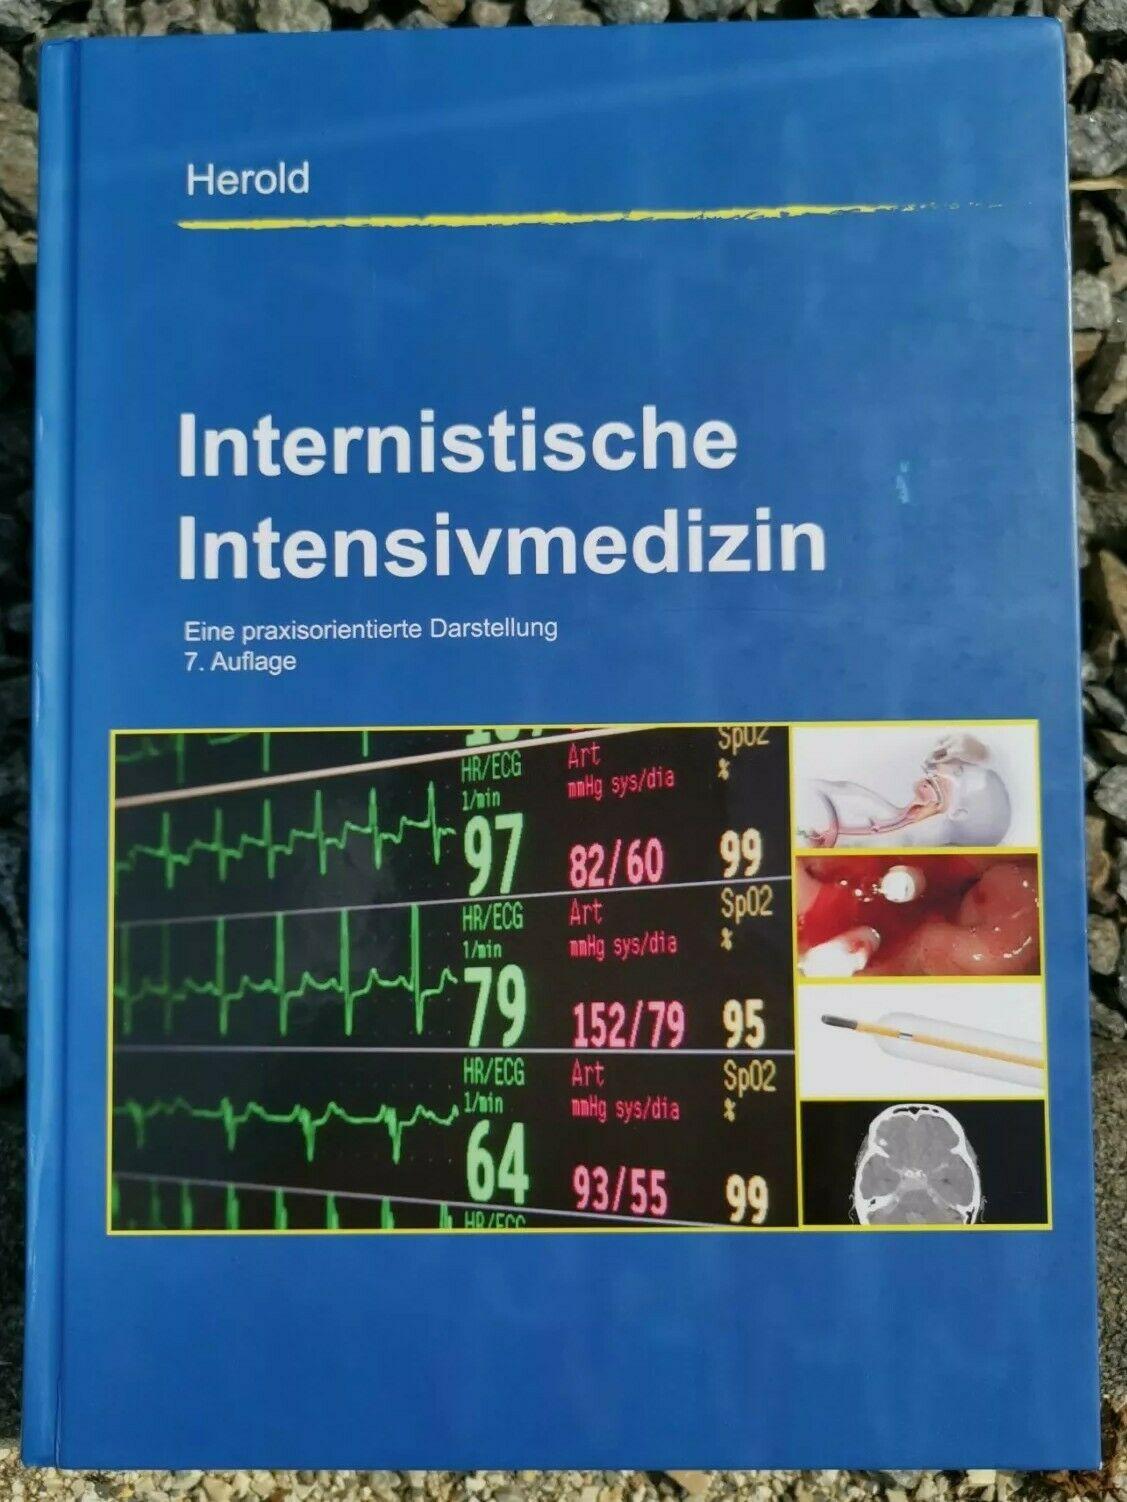 Internistische Intensivmedizin - Eine praxisorientierte Darstellung [hardcover]